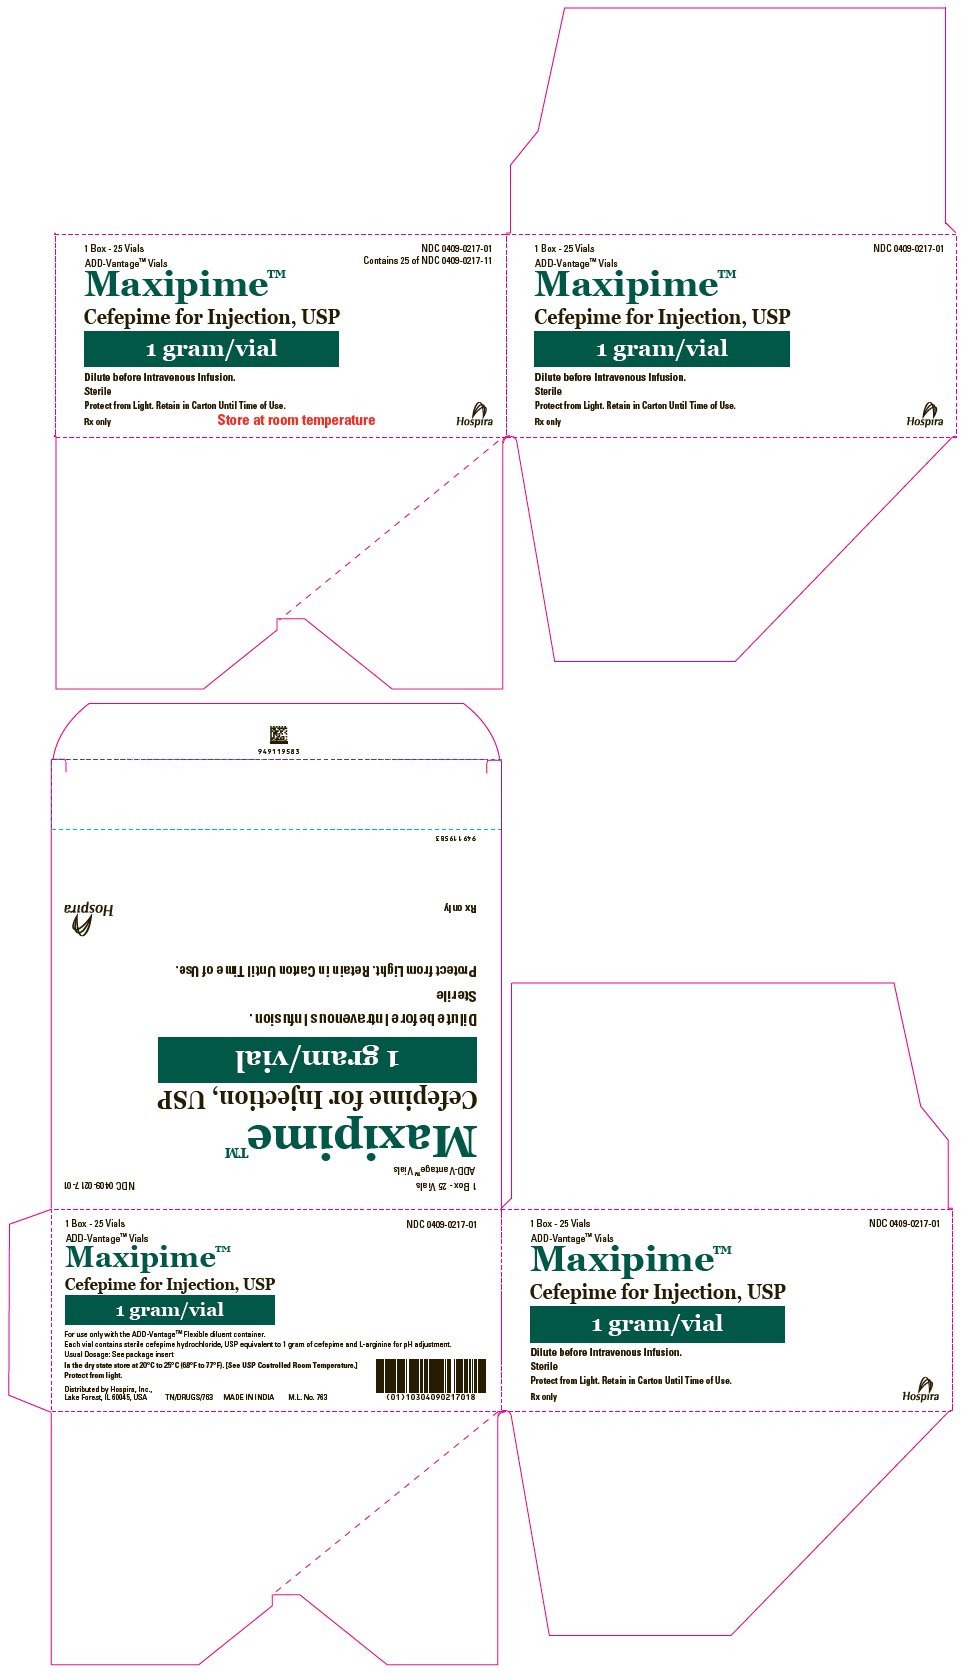 PRINCIPAL DISPLAY PANEL - 1 gram ADD-Vantage Vial Carton